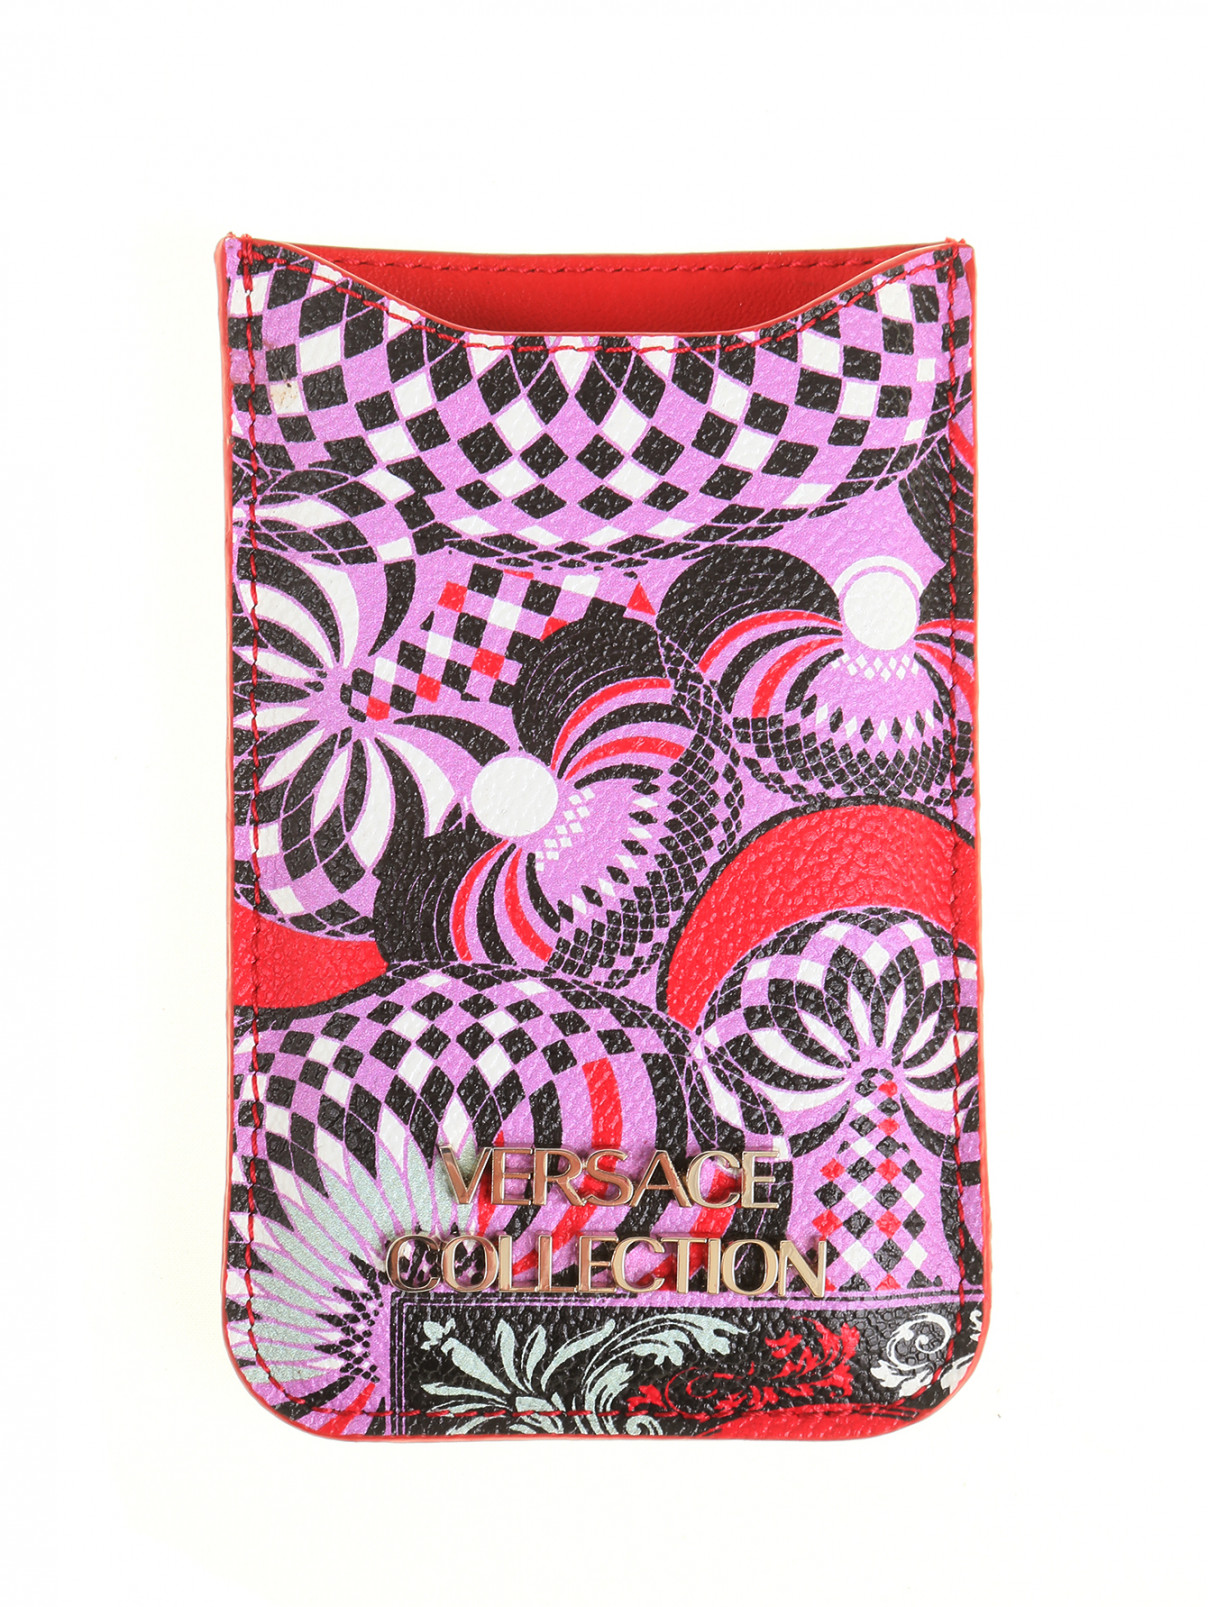 Чехол с принтом для iPhone 5 Versace Collection  –  Общий вид  – Цвет:  Узор